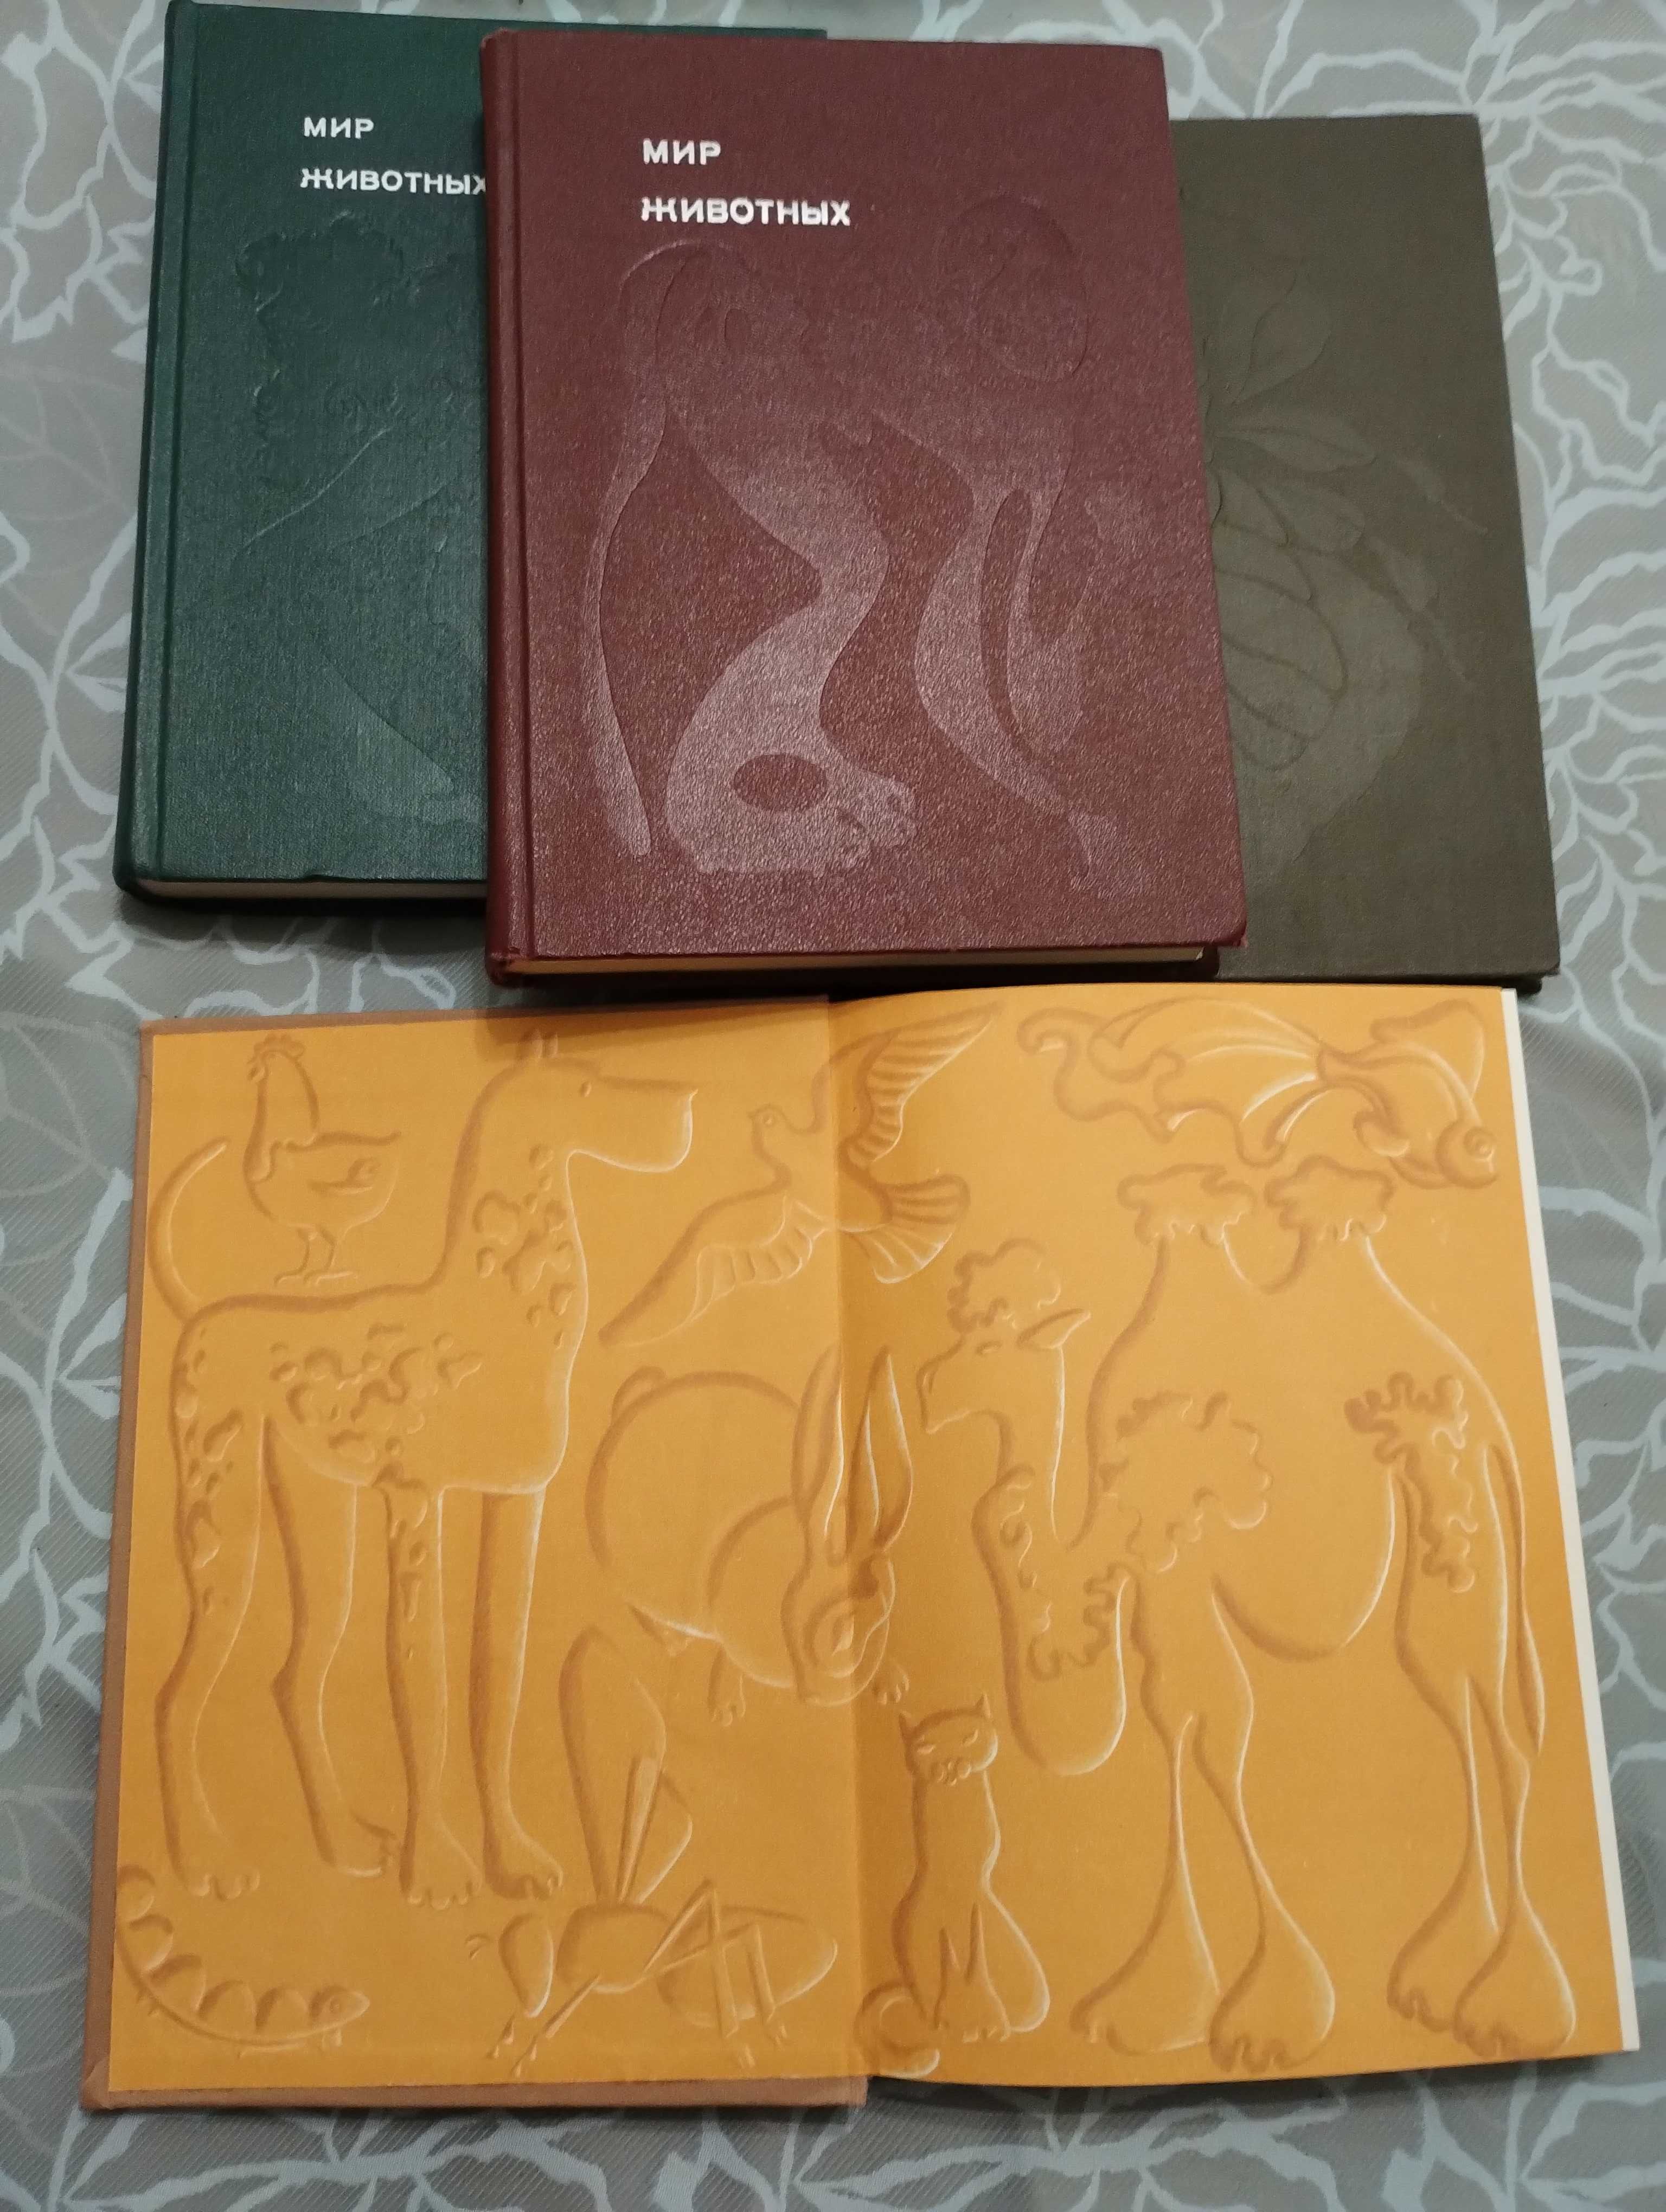 4 книги из серии "Мир животных" Игоря Акимушкина 1971,75,73,81 год.